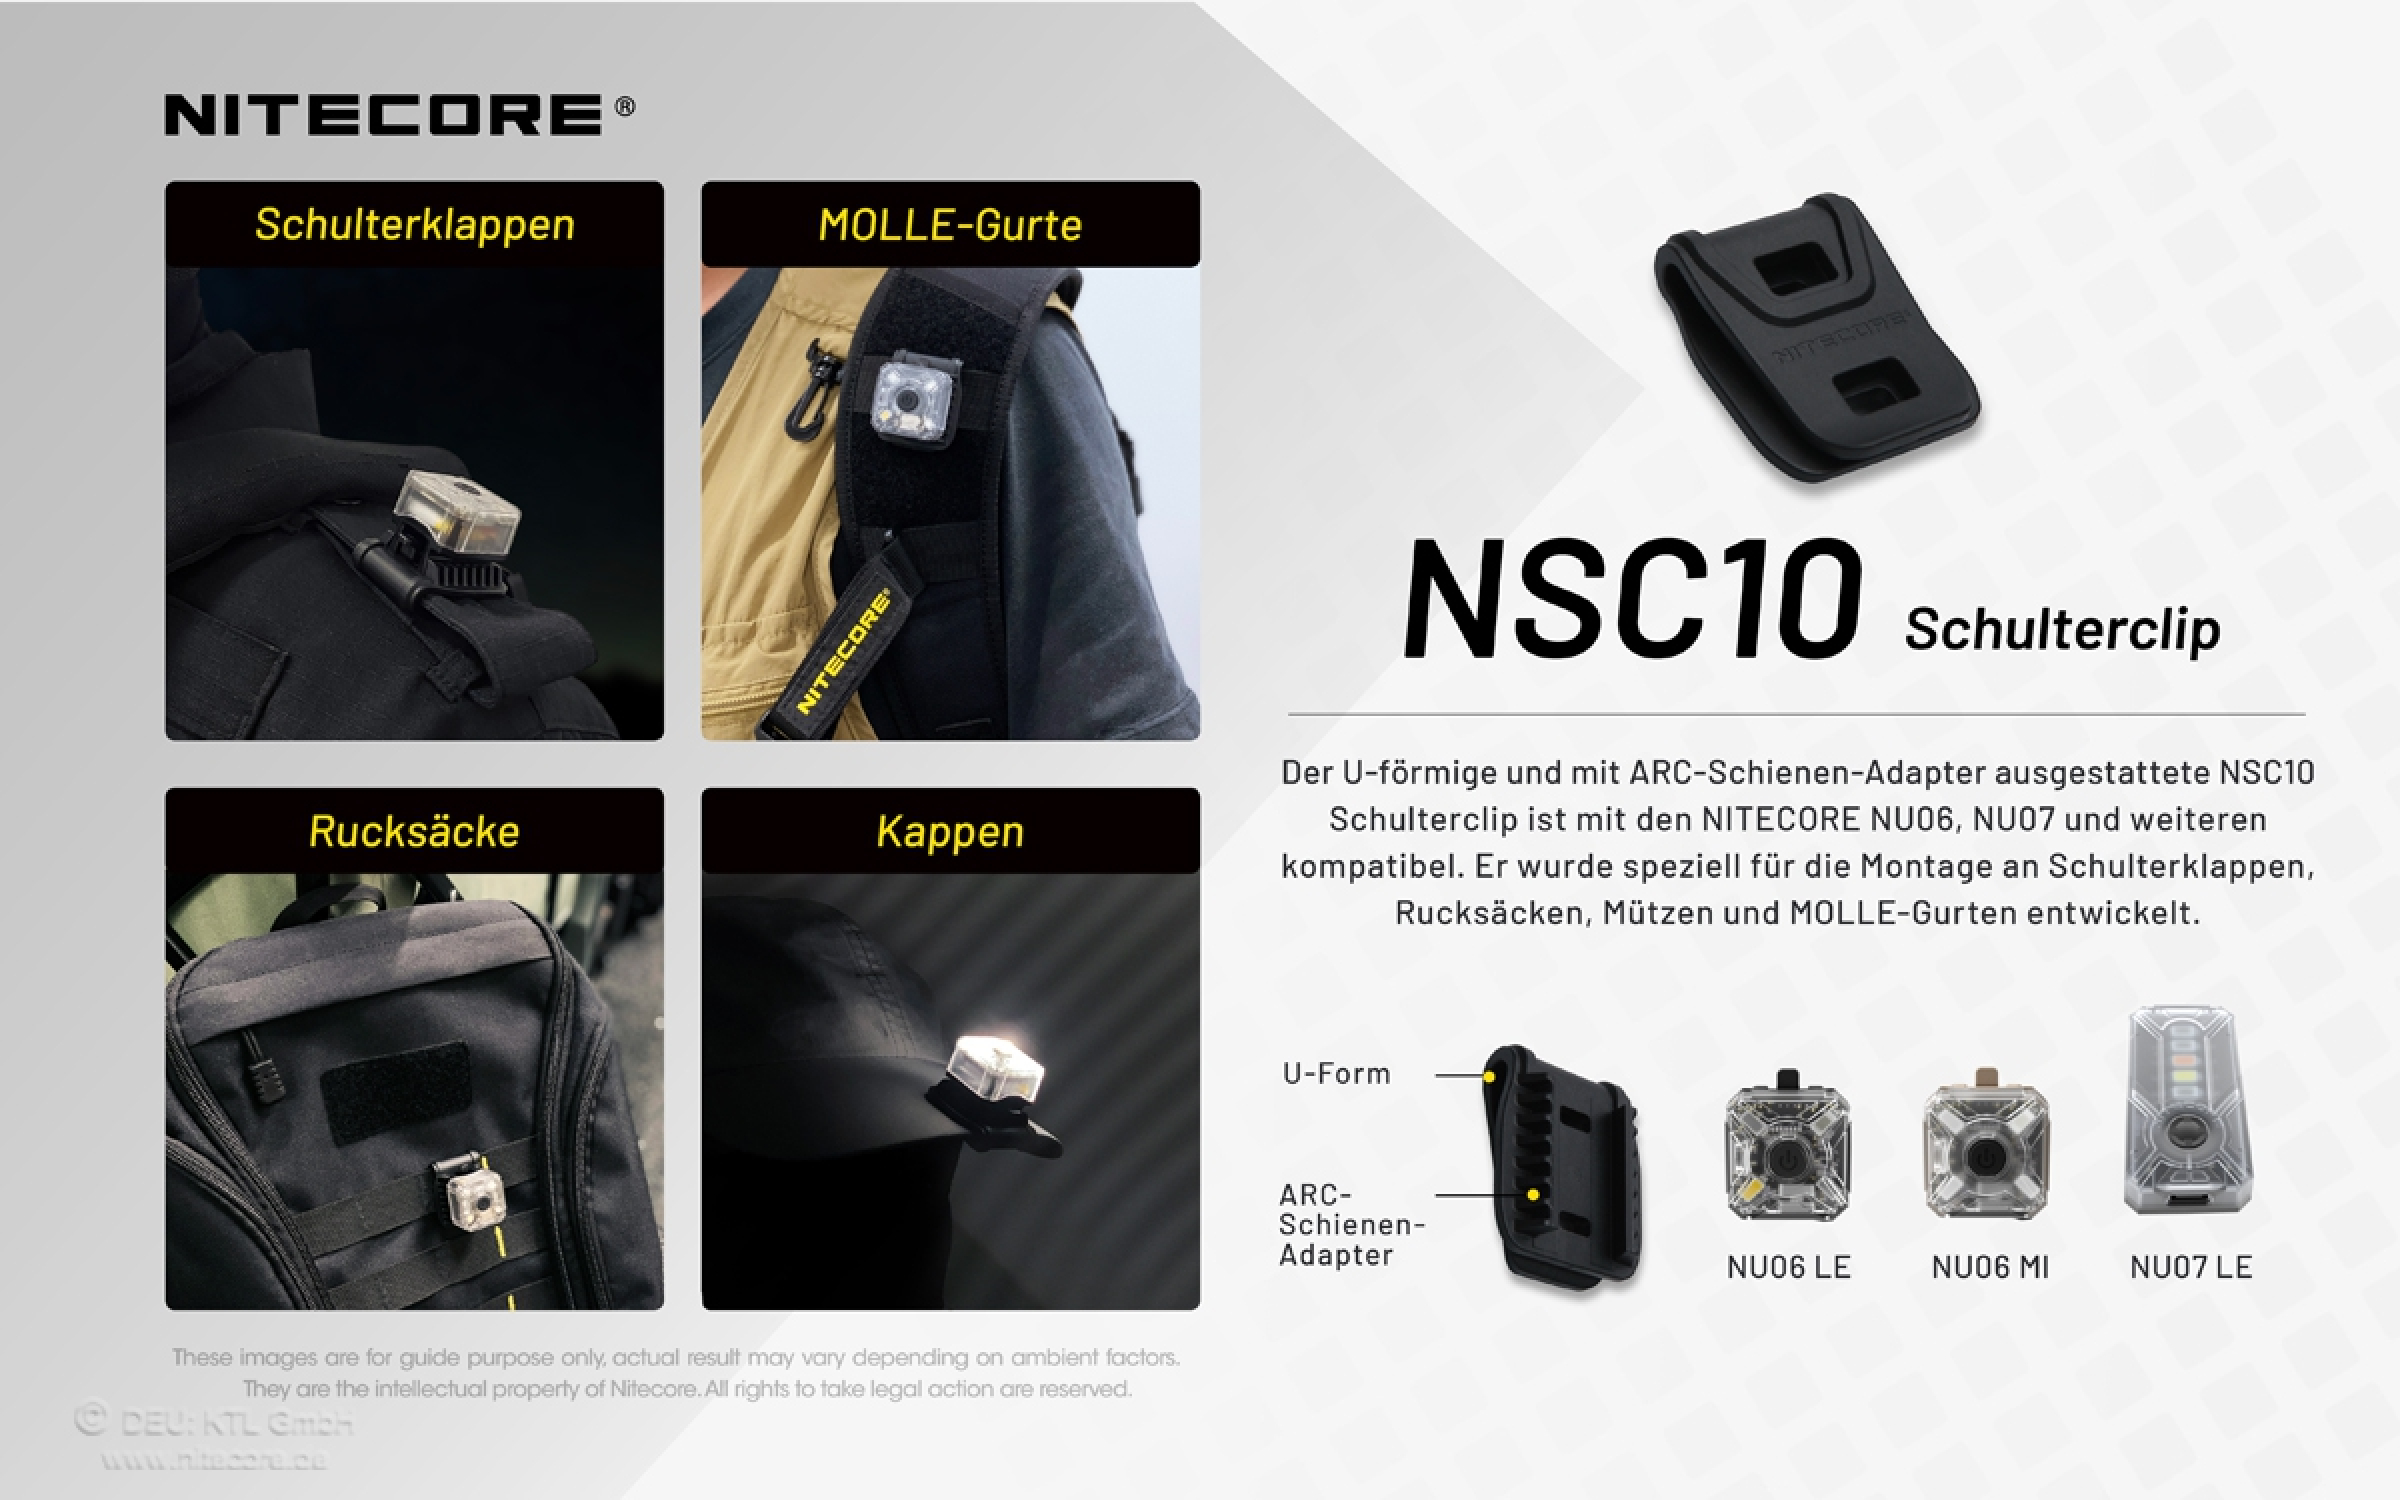 Nitecore NSC10 - Schulterclip für NU05, NU06